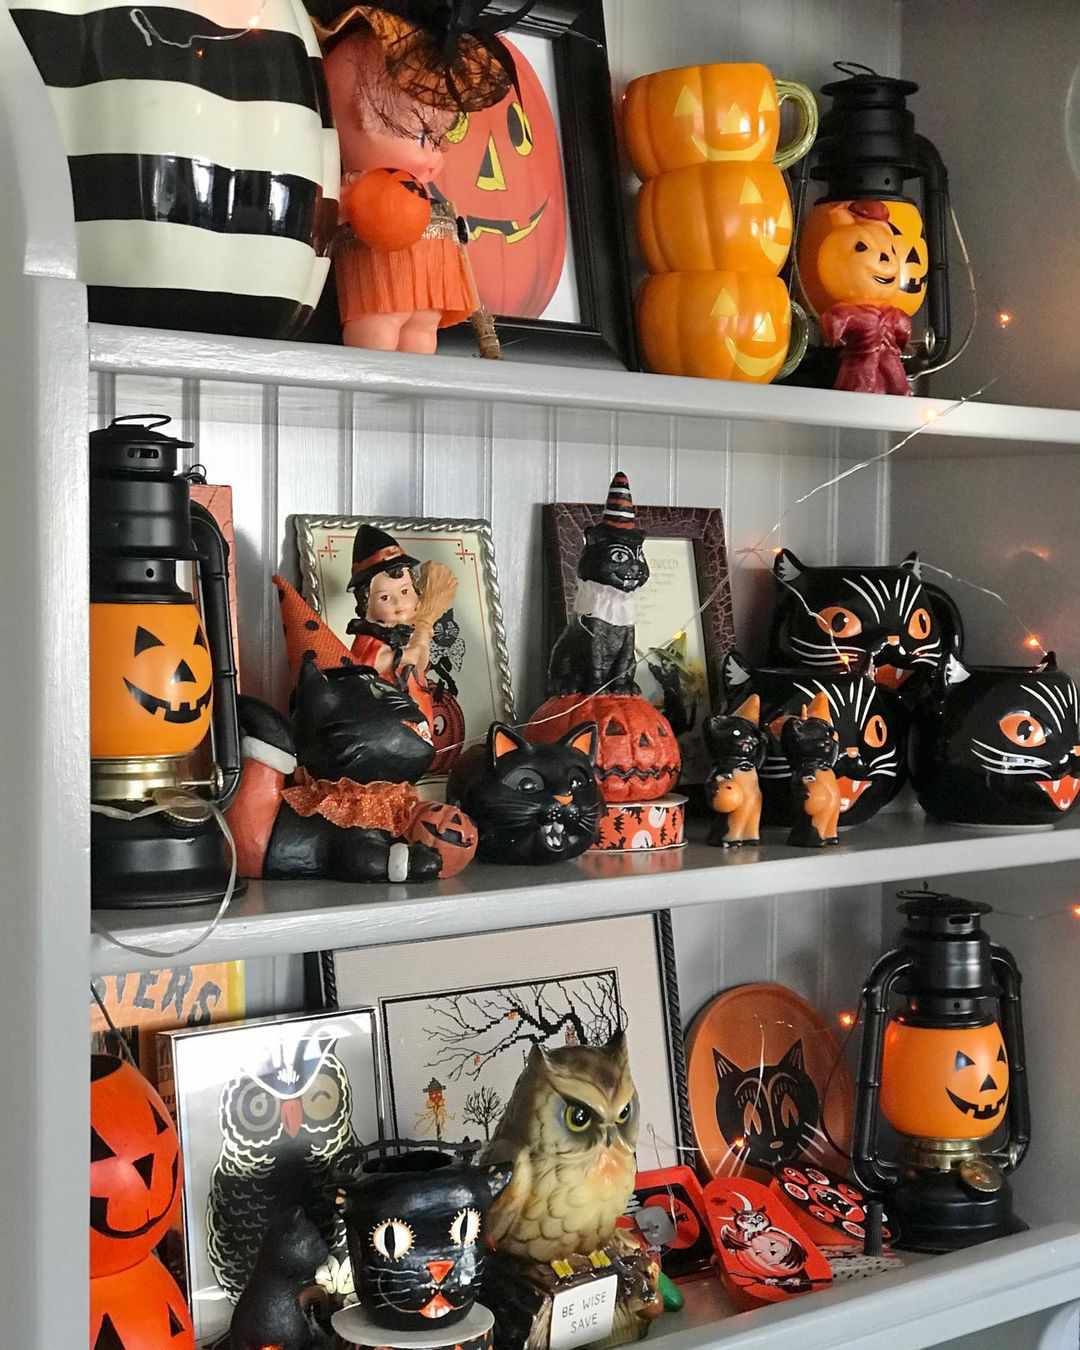 Shelves of retro pumpkins, cats and more.